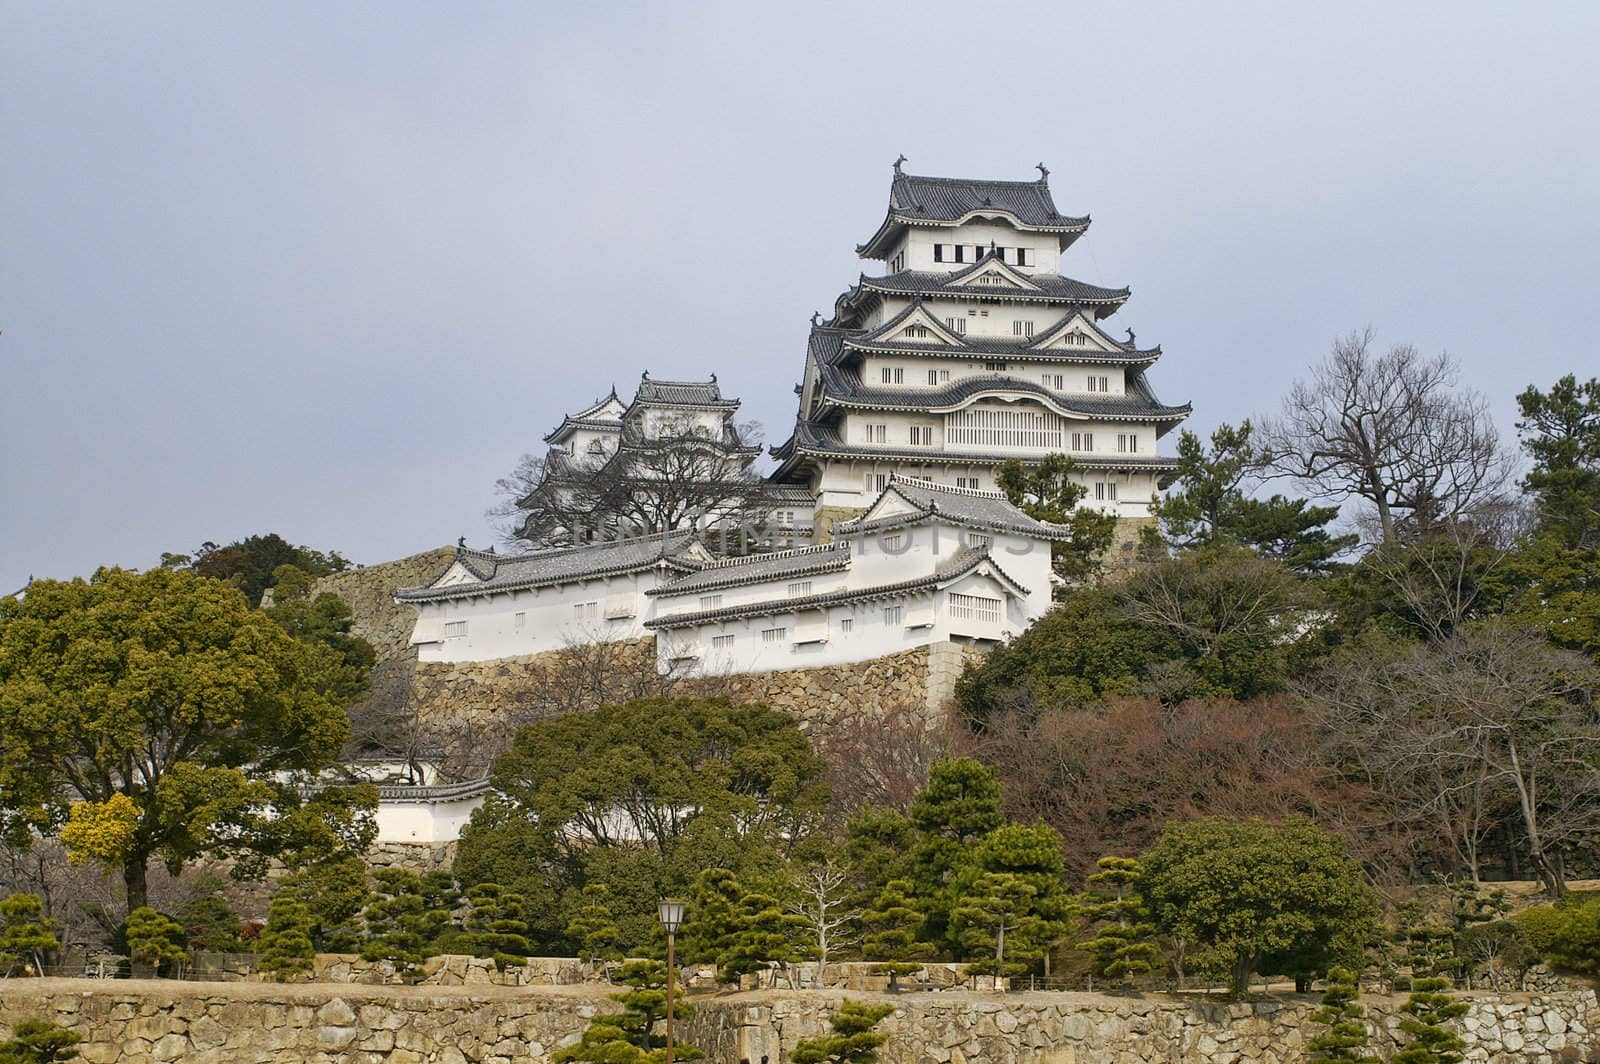 Majestic Castle of Himeji in Japan. by diro